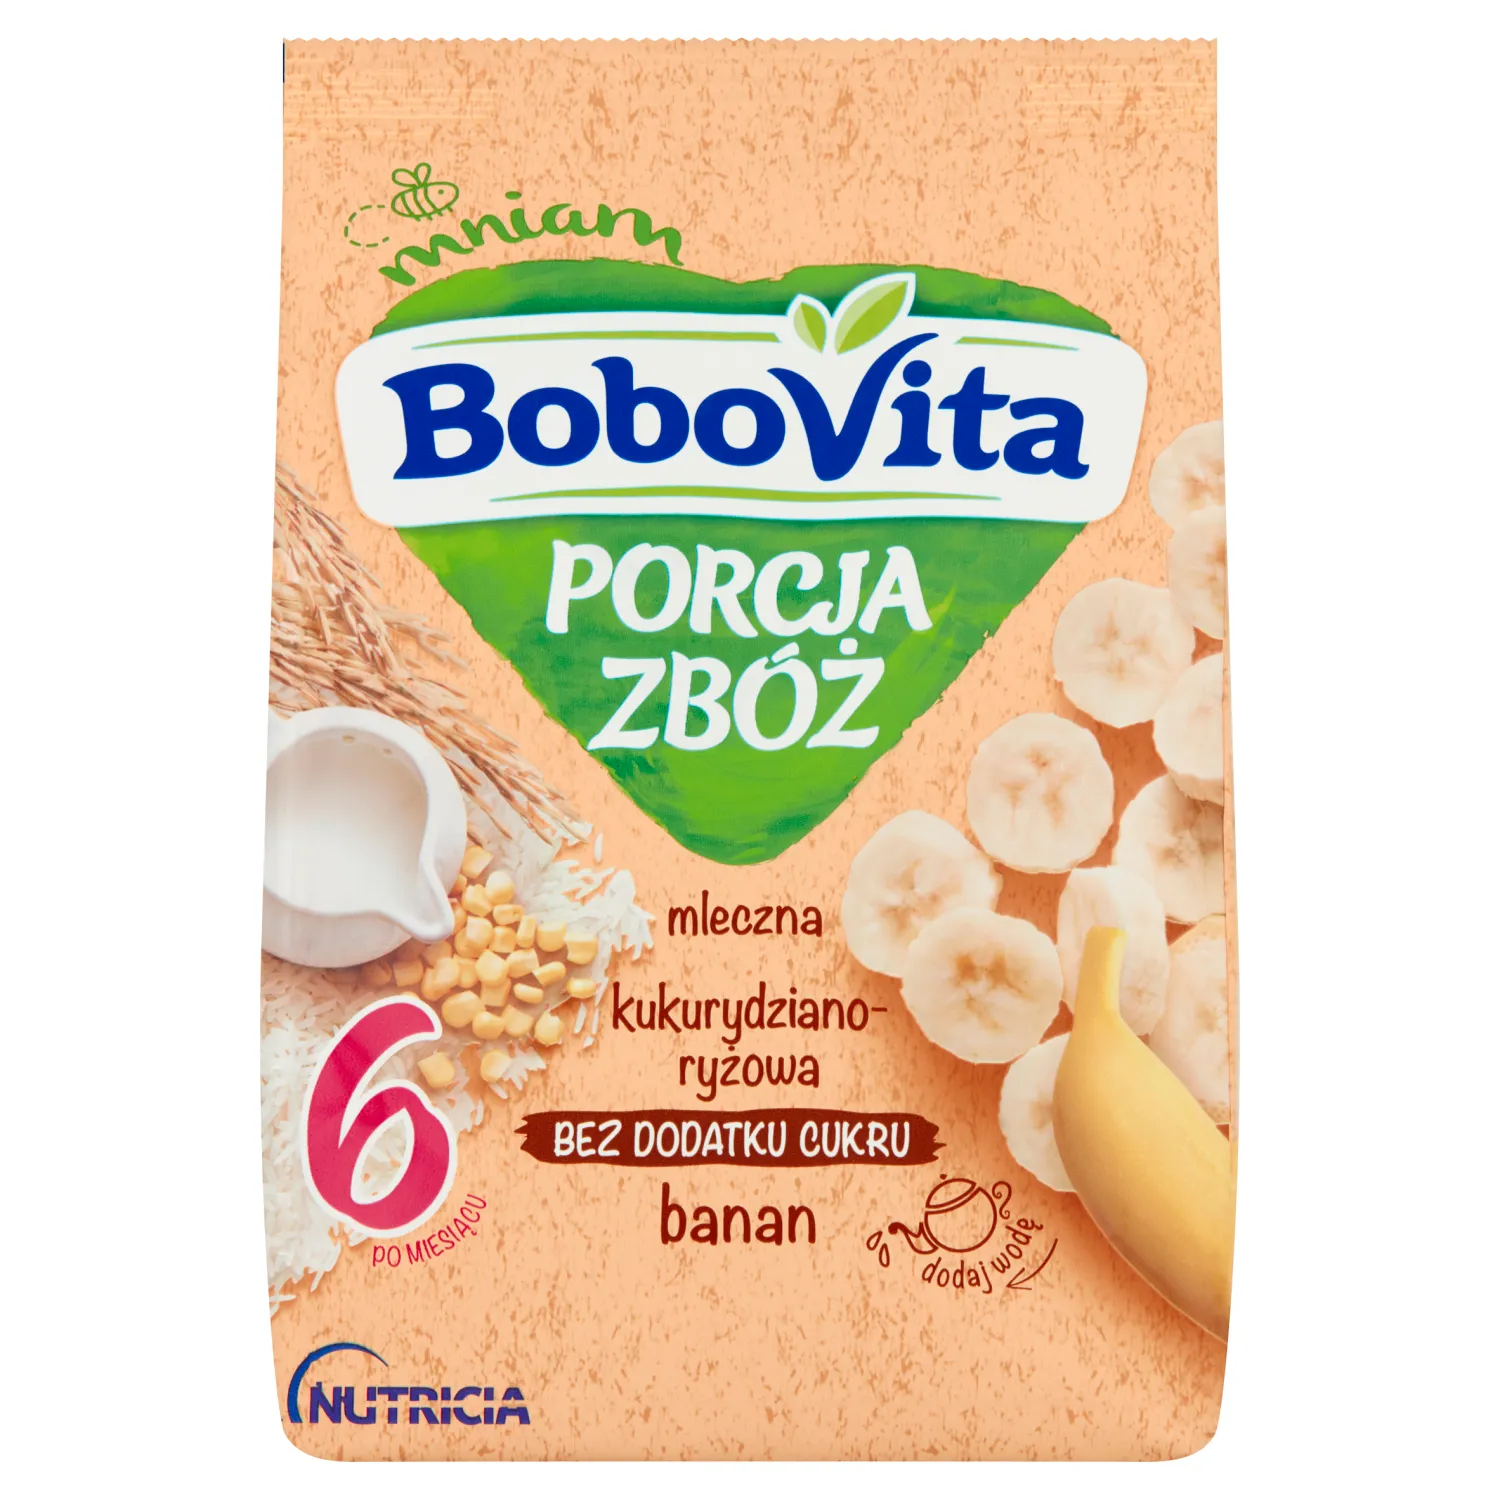 BoboVita Porcja Zbóż, kaszka mleczna kukurydziano-ryżowa banan po 6 miesiącu, 210 g